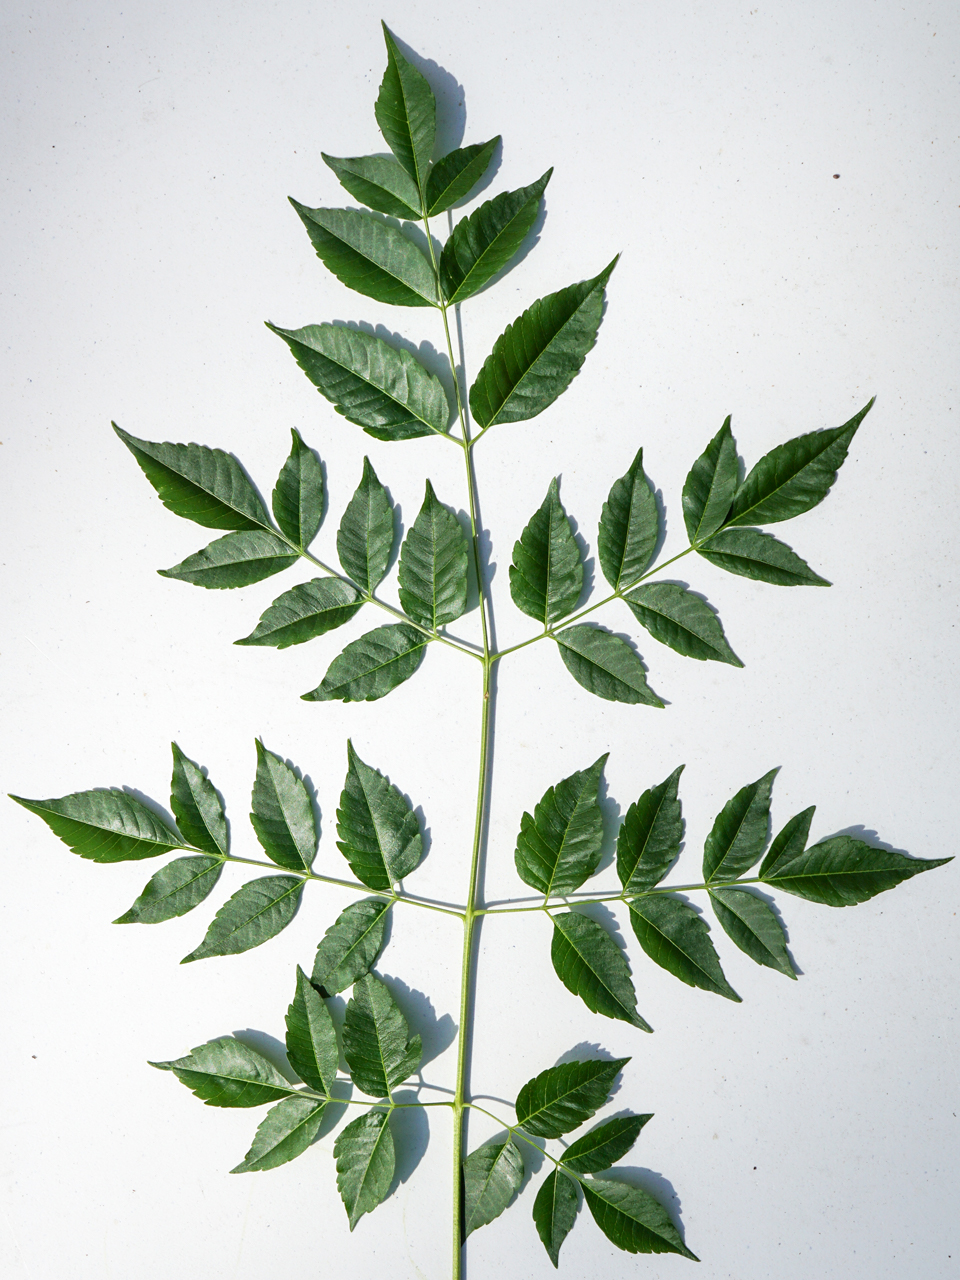 Chinaberry (Melia azedarach))